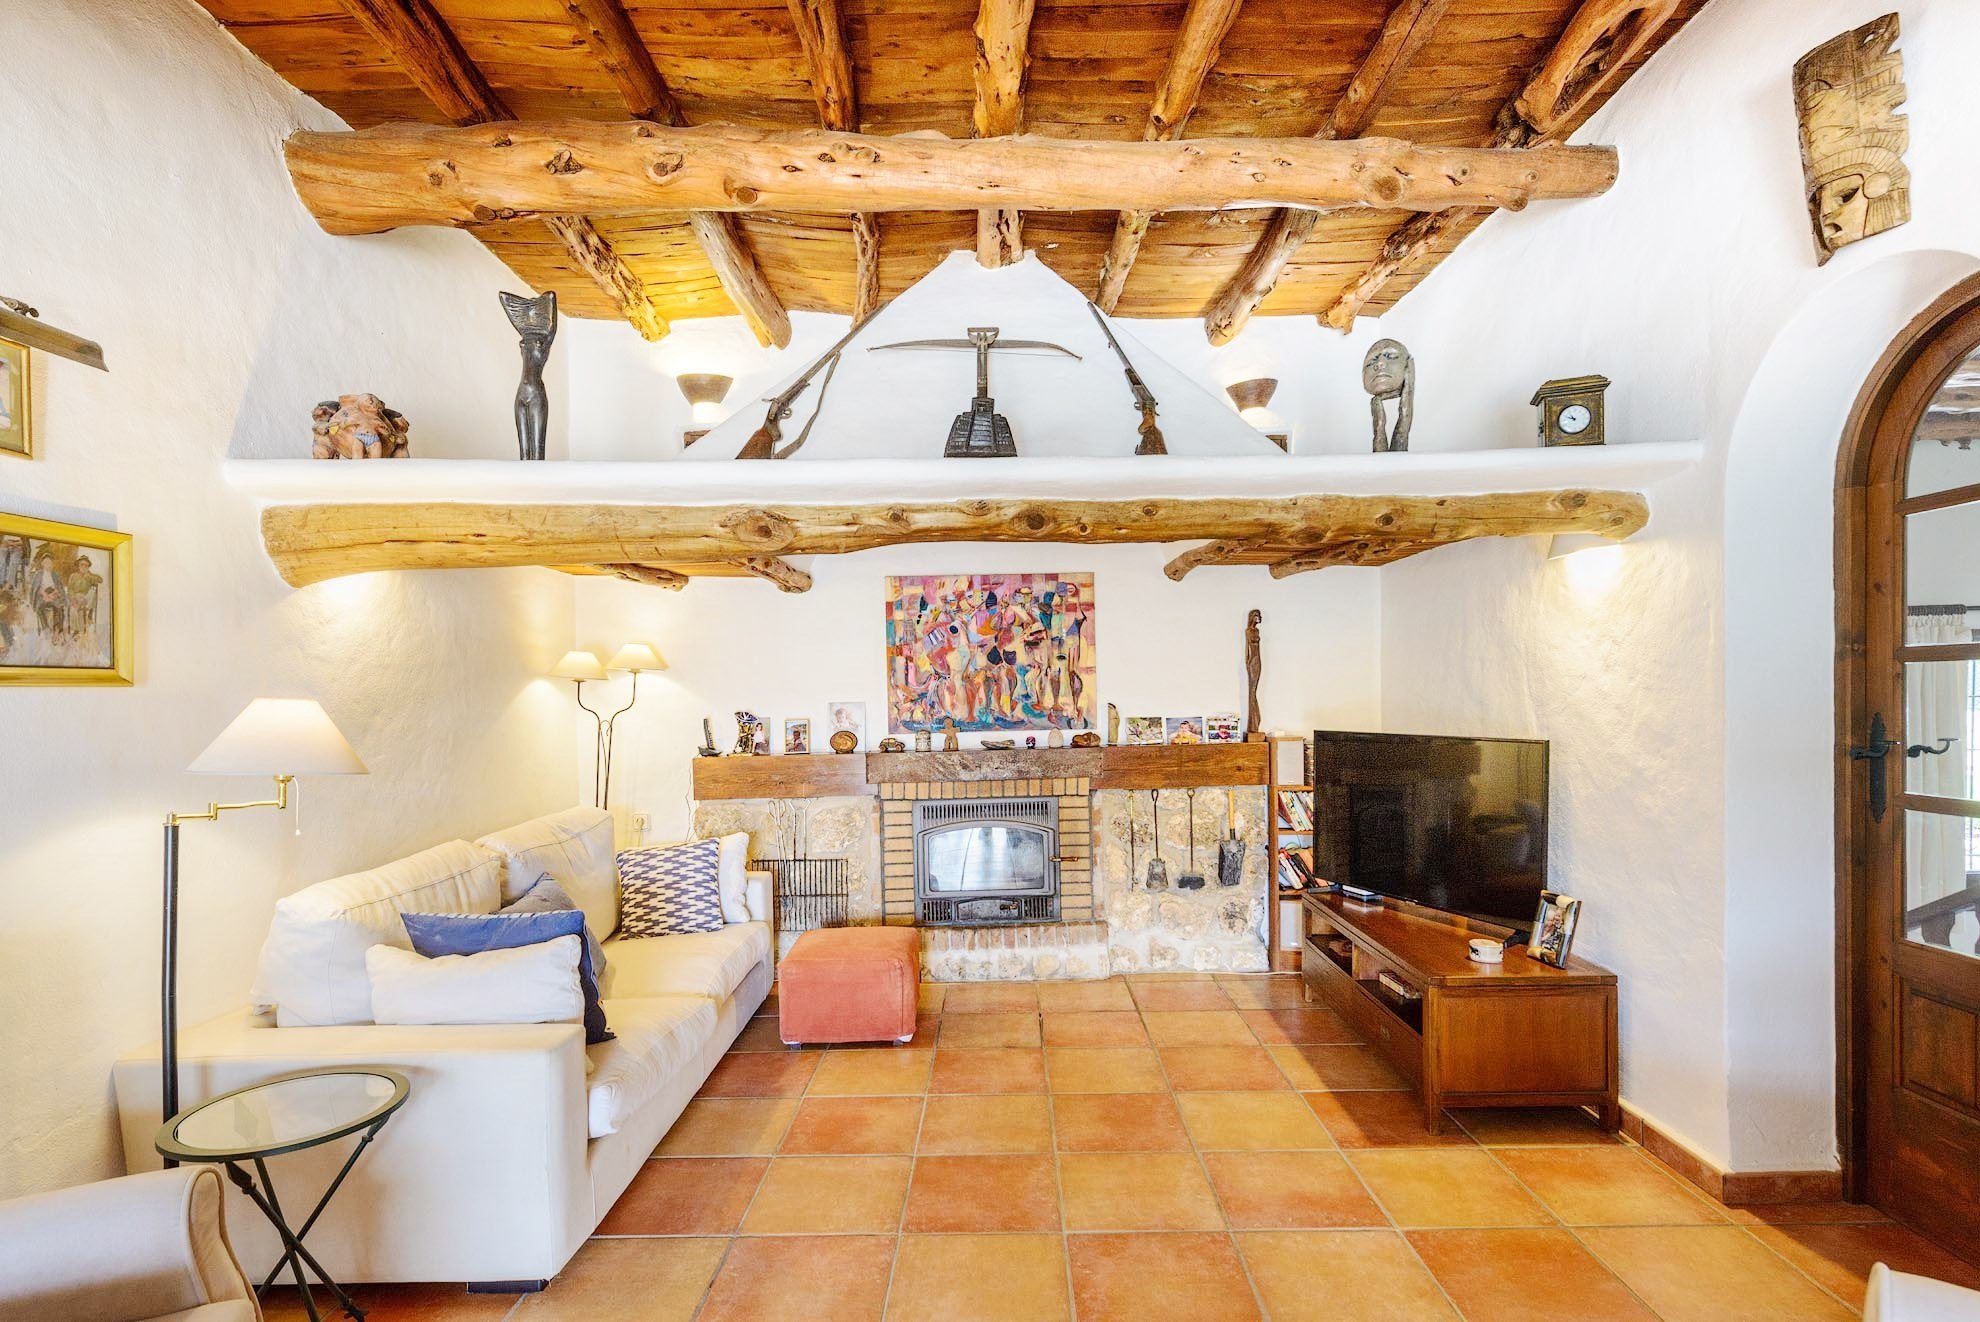 Ruime en lichte villa in traditionele Ibiza-stijl met een prachtig uitzicht